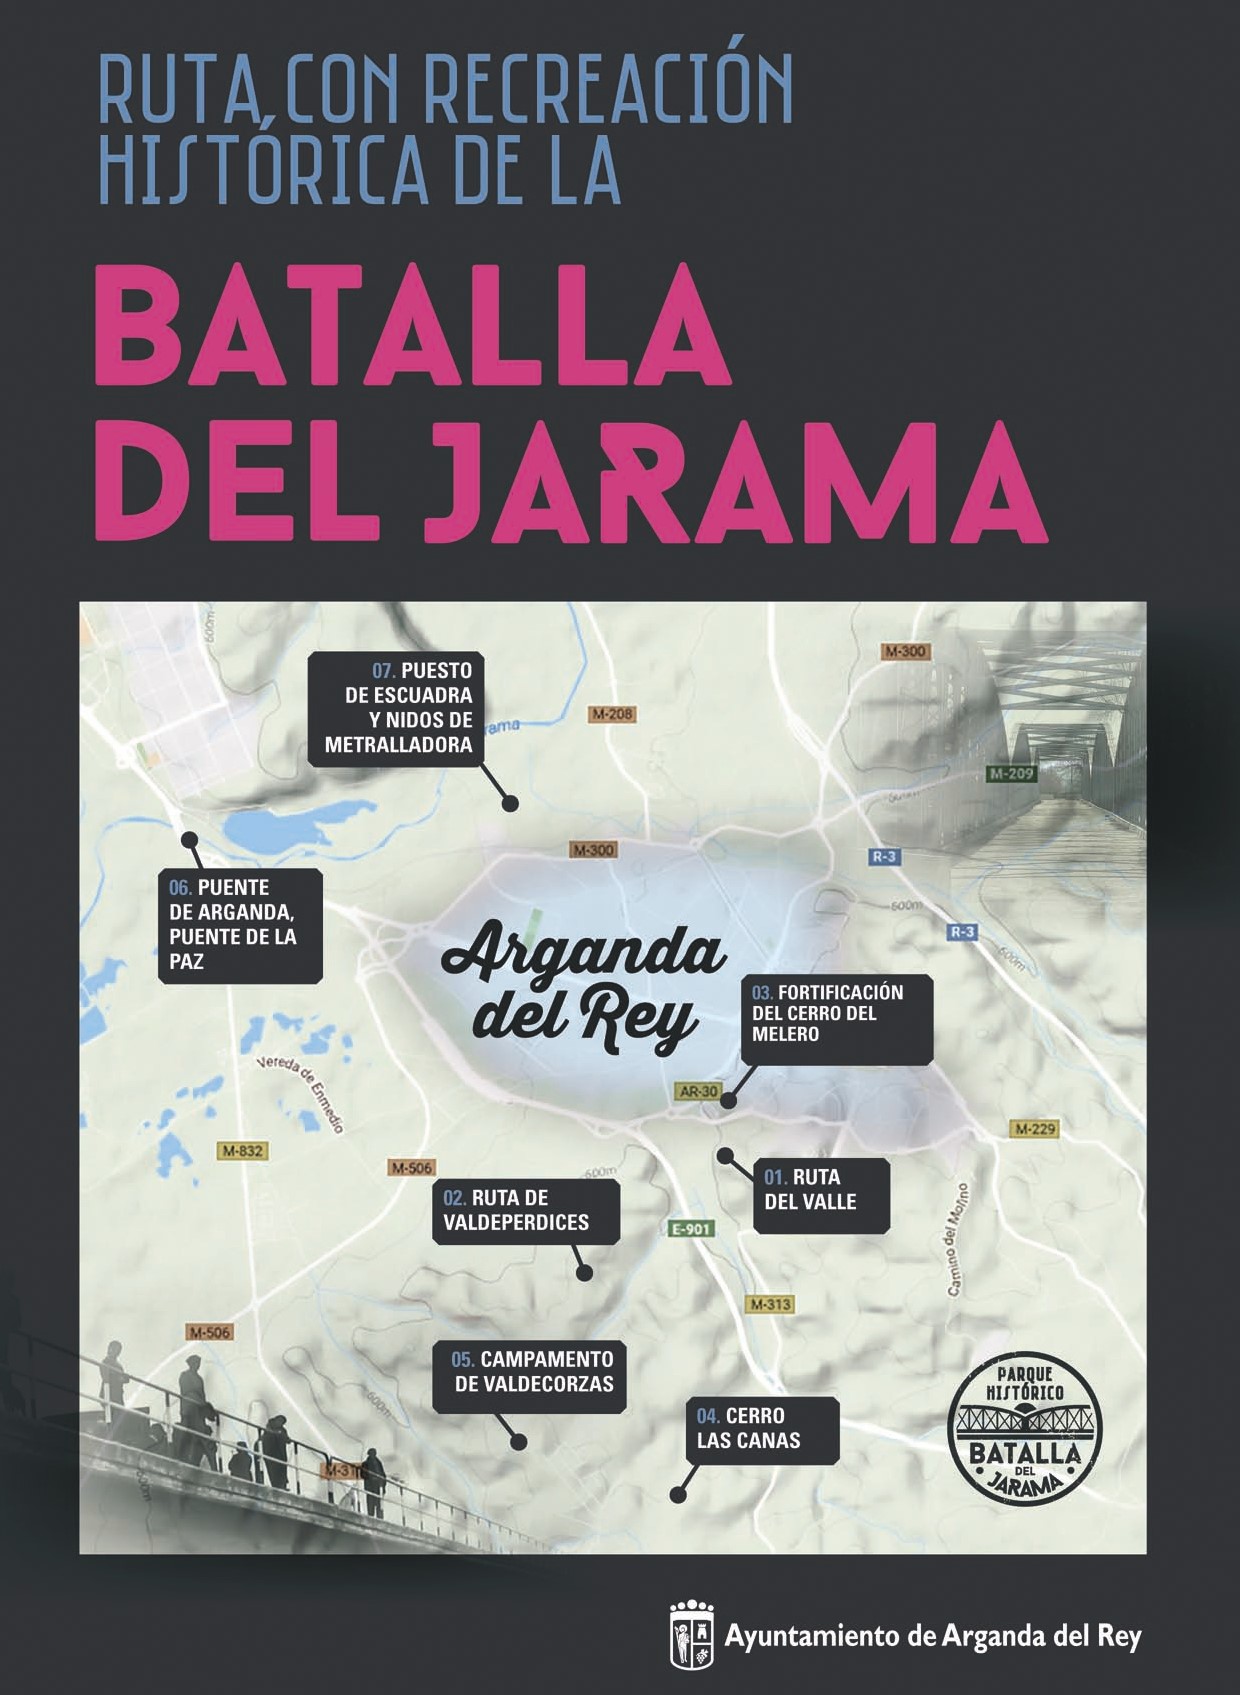 Arganda del Rey conmemorará un año más las Jornadas de la Batalla del Jarama con una ruta con recreación histórica